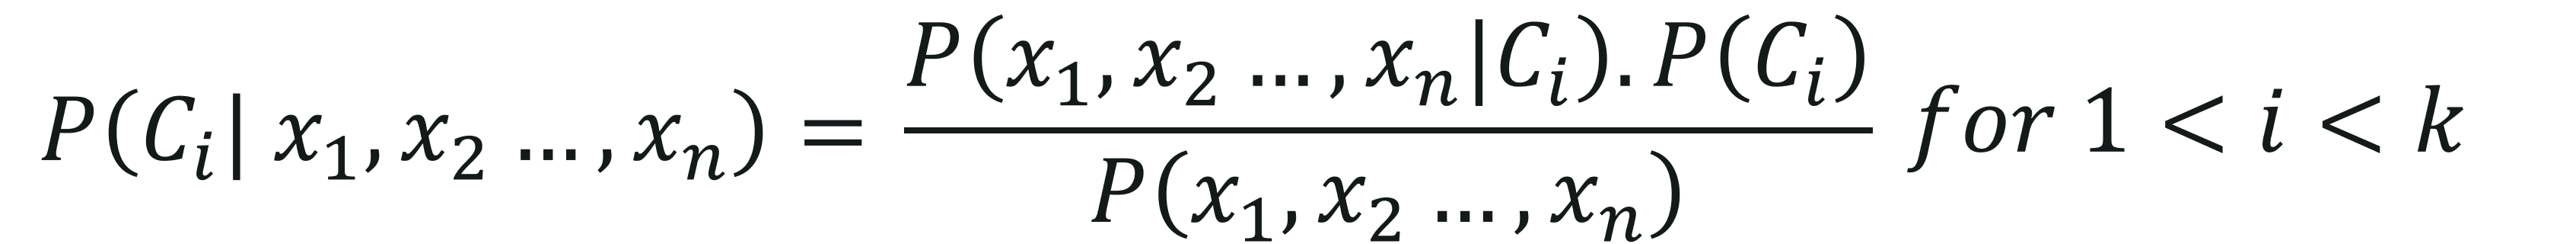 Naive Bayes Derivation Equation - Naive Bayes In R - Edureka